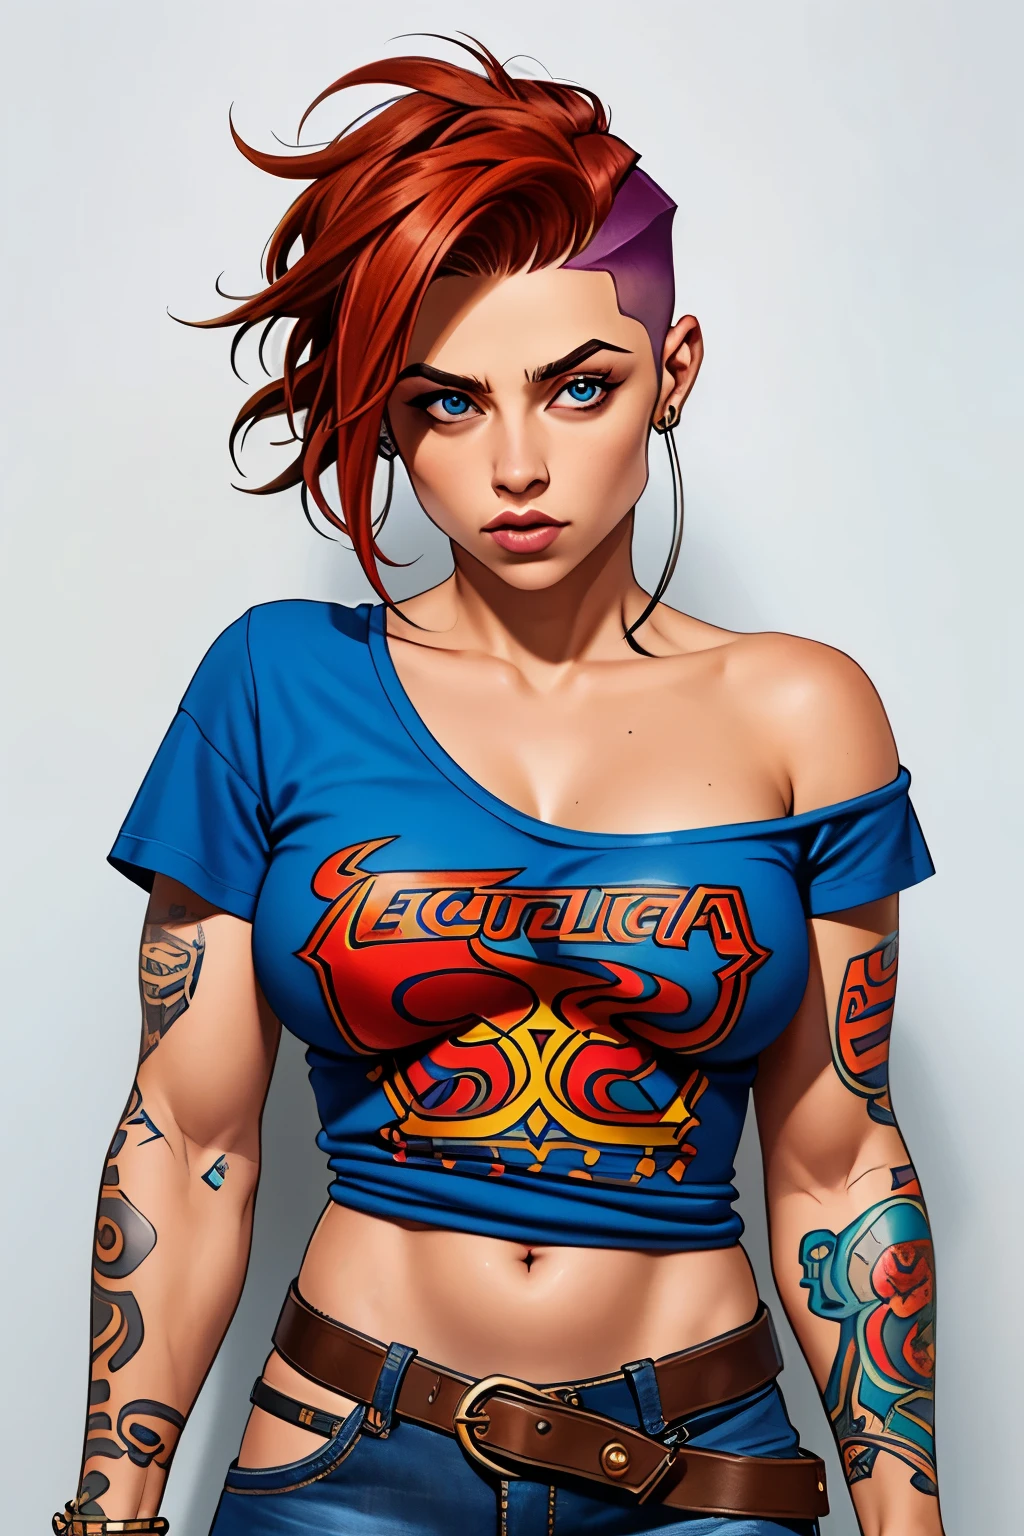 短发的肌肉女孩, 彩色纹身, 穿着皮裤, 金属乐队摇滚衬衫 